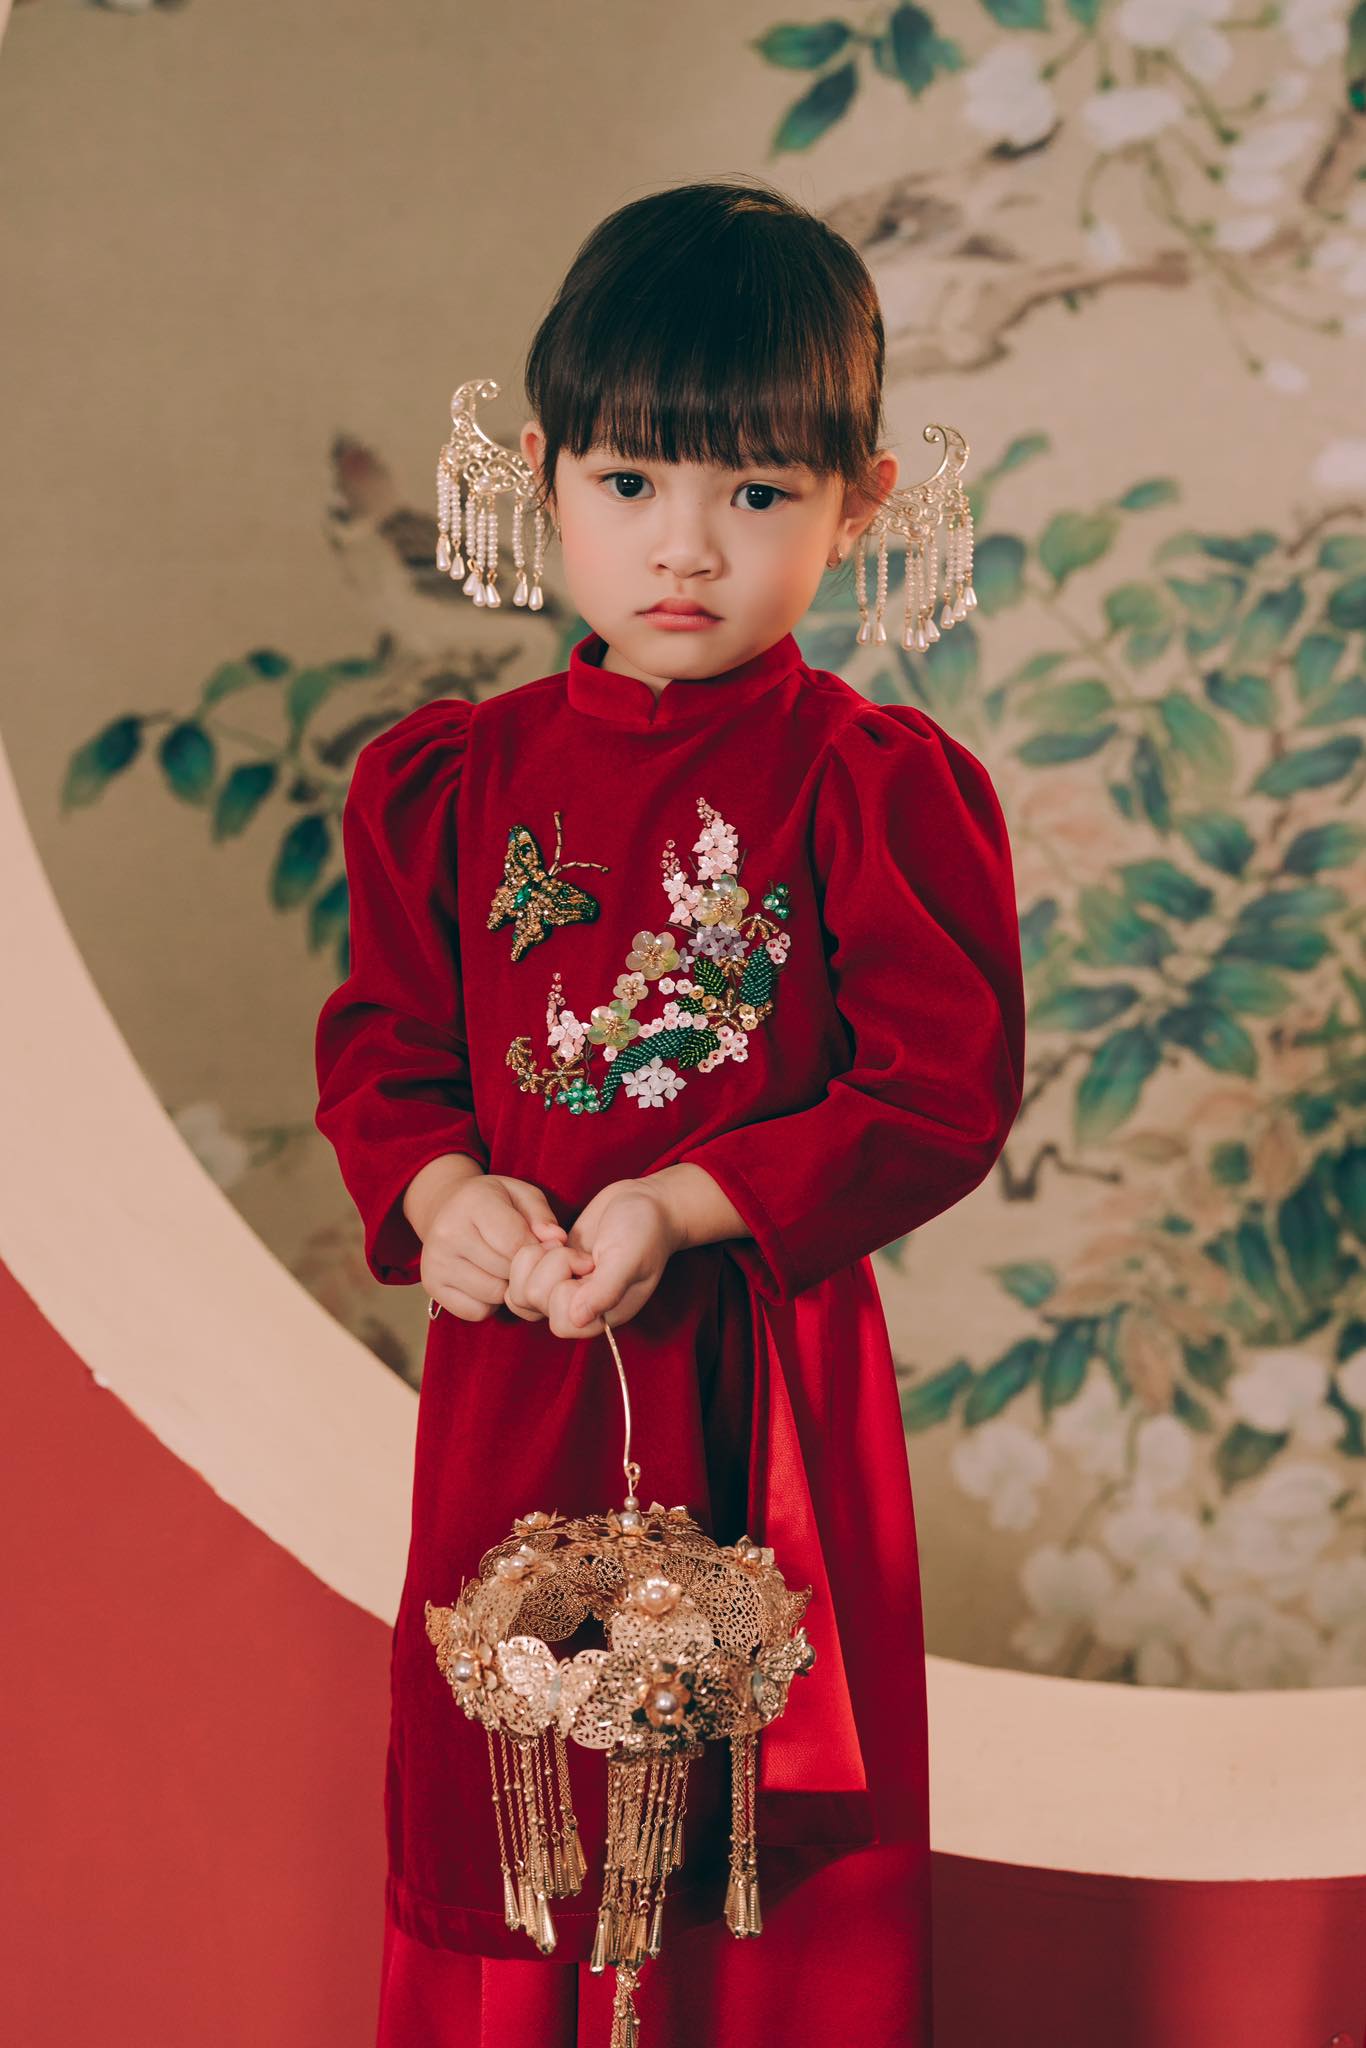 Mê đắm cổ phục, mẹ thiết kế cho con gái loạt áo dài trang trọng, quyền quý, nuôi dưỡng tình yêu và lưu giữ nét truyền thống dân tộc - Ảnh 5.